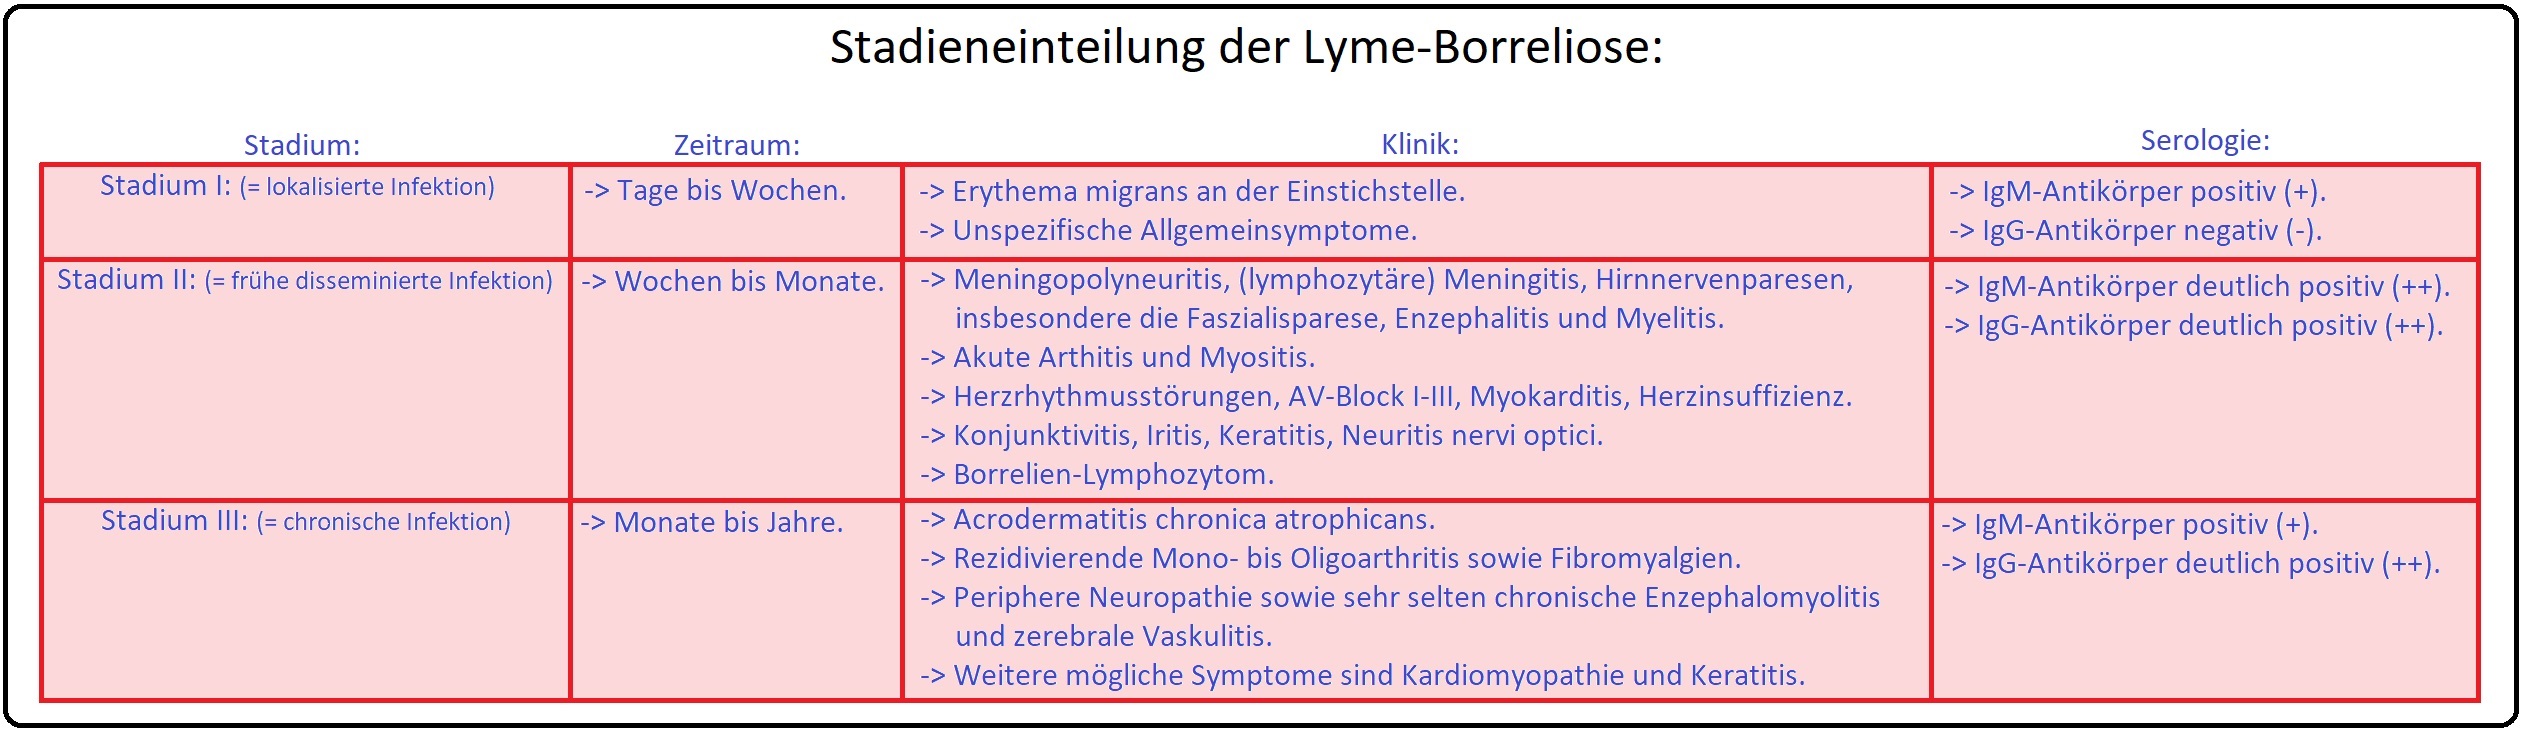 004 Stadieneinteilung der Lyme Borreliose